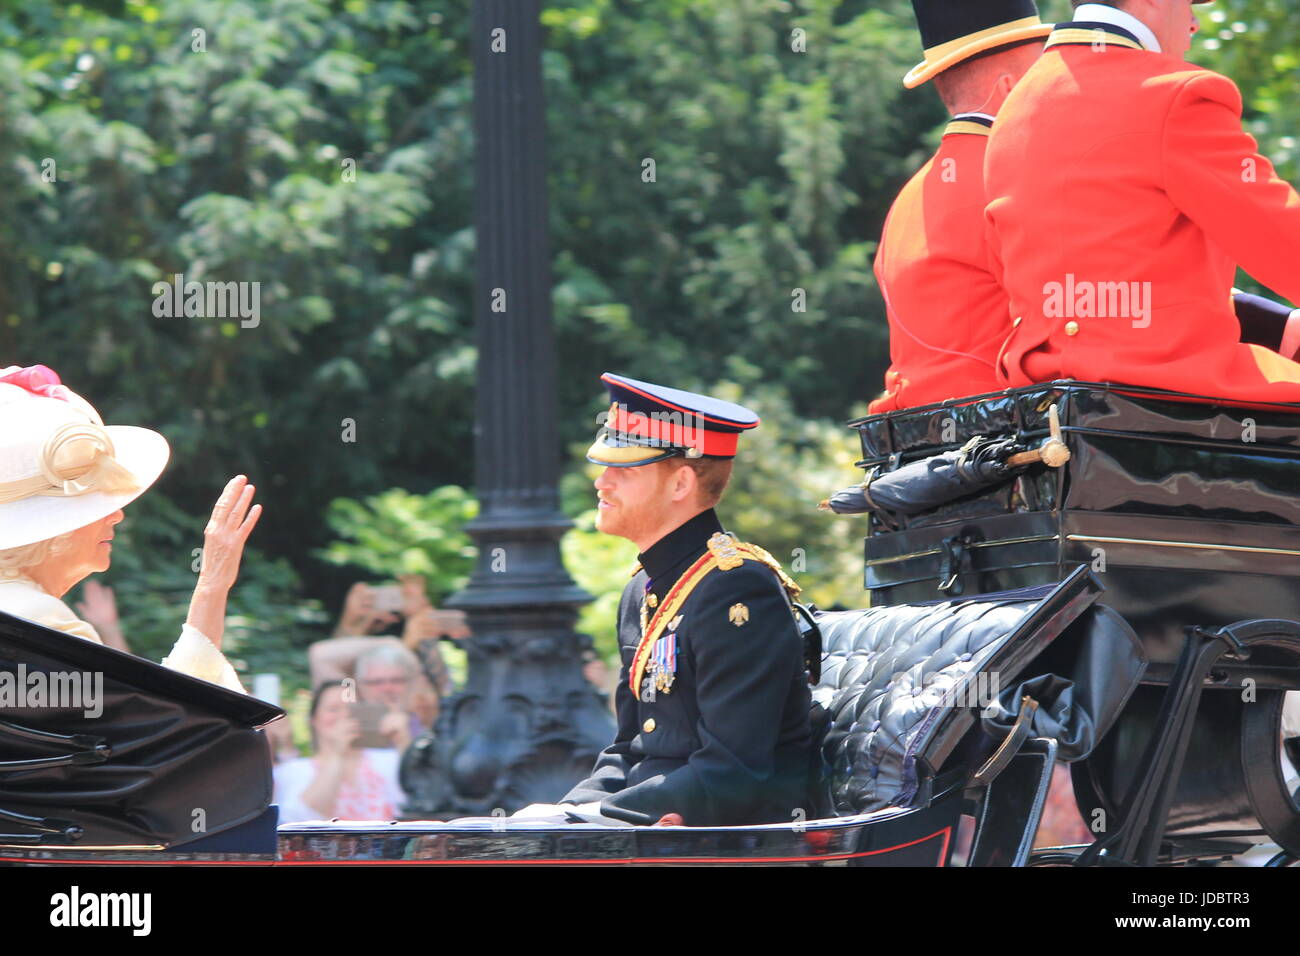 London, England - 17. Juni 2017: Prinz Harry, Kate Middleton und Camilla Parker Bowles in einer offenen Kutsche für die Farbe 2015 die Königinnen, die offiziellen Geburtstag, London, UK. Foto Fotografie editorial Bild zu markieren Stockfoto